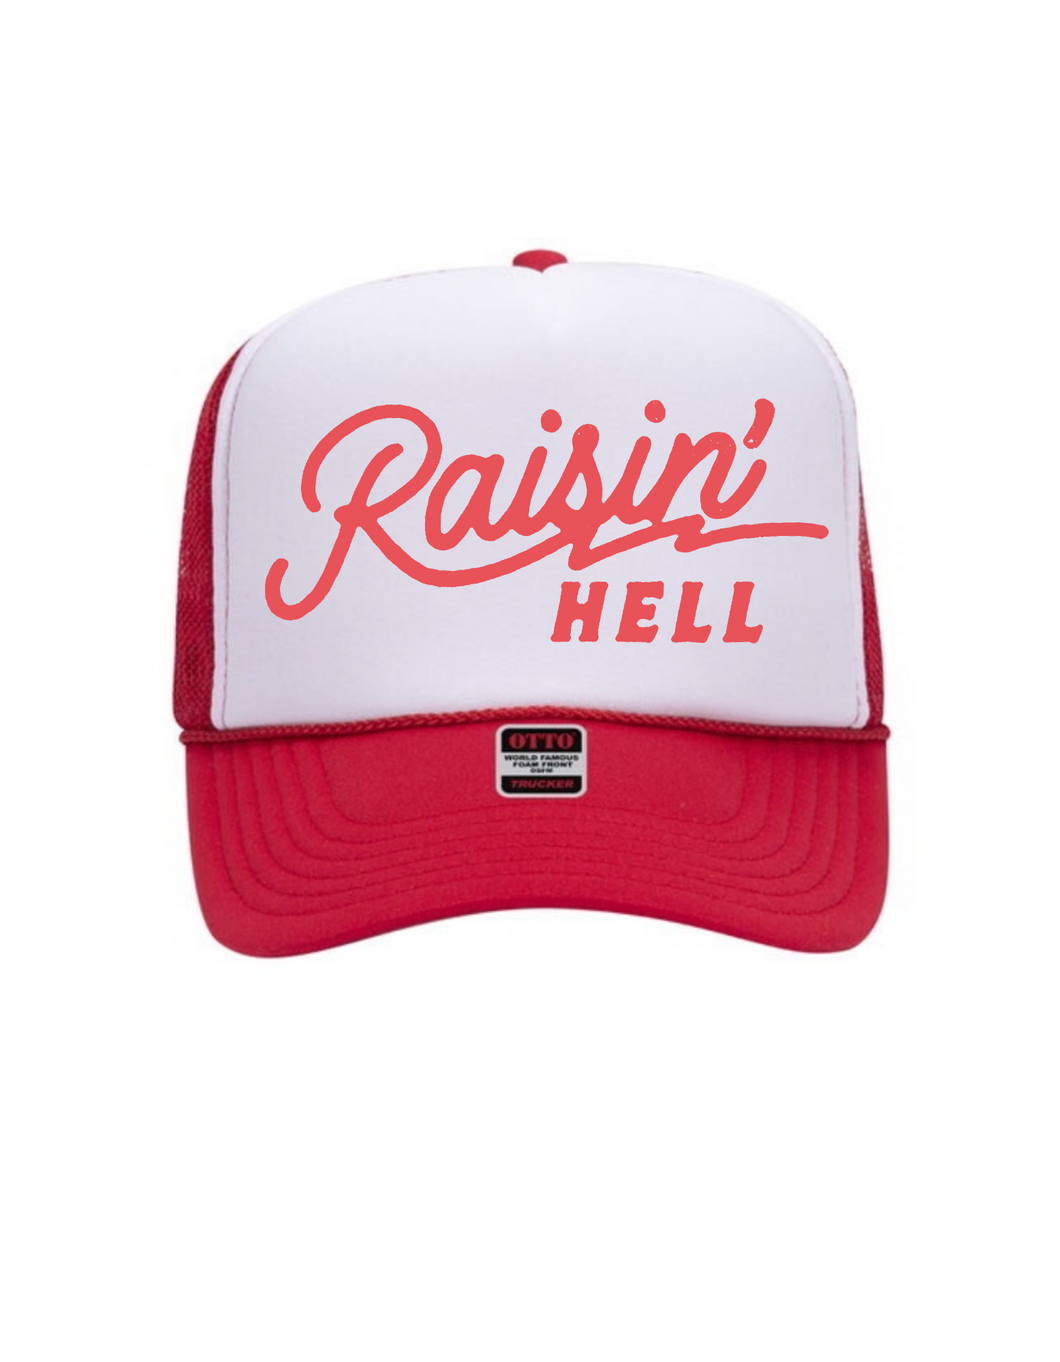 Raisin' Hell - Trucker Hat